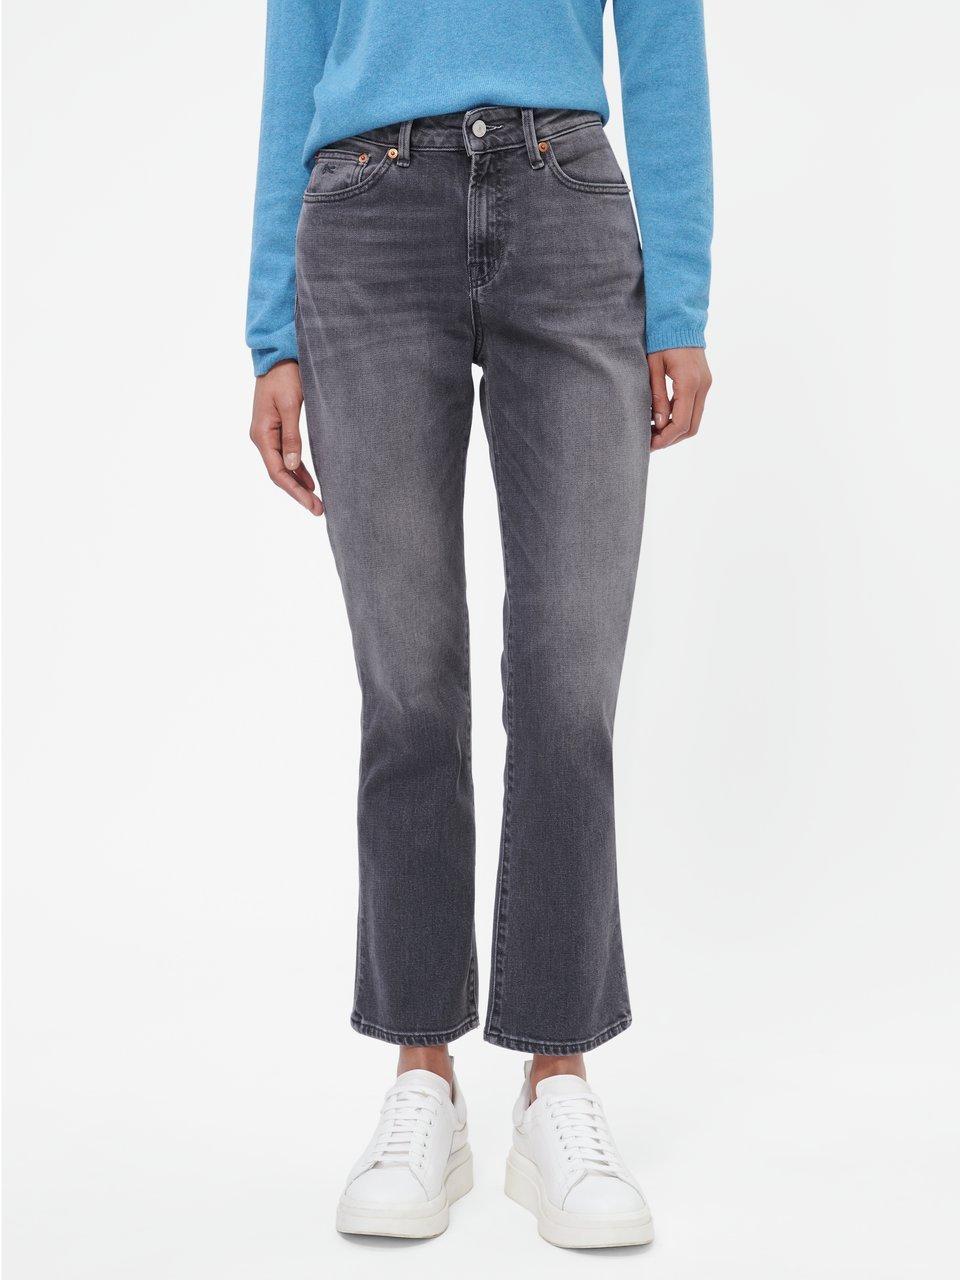 Graue Damen Jeans im Peter Hahn Online-Shop kaufen